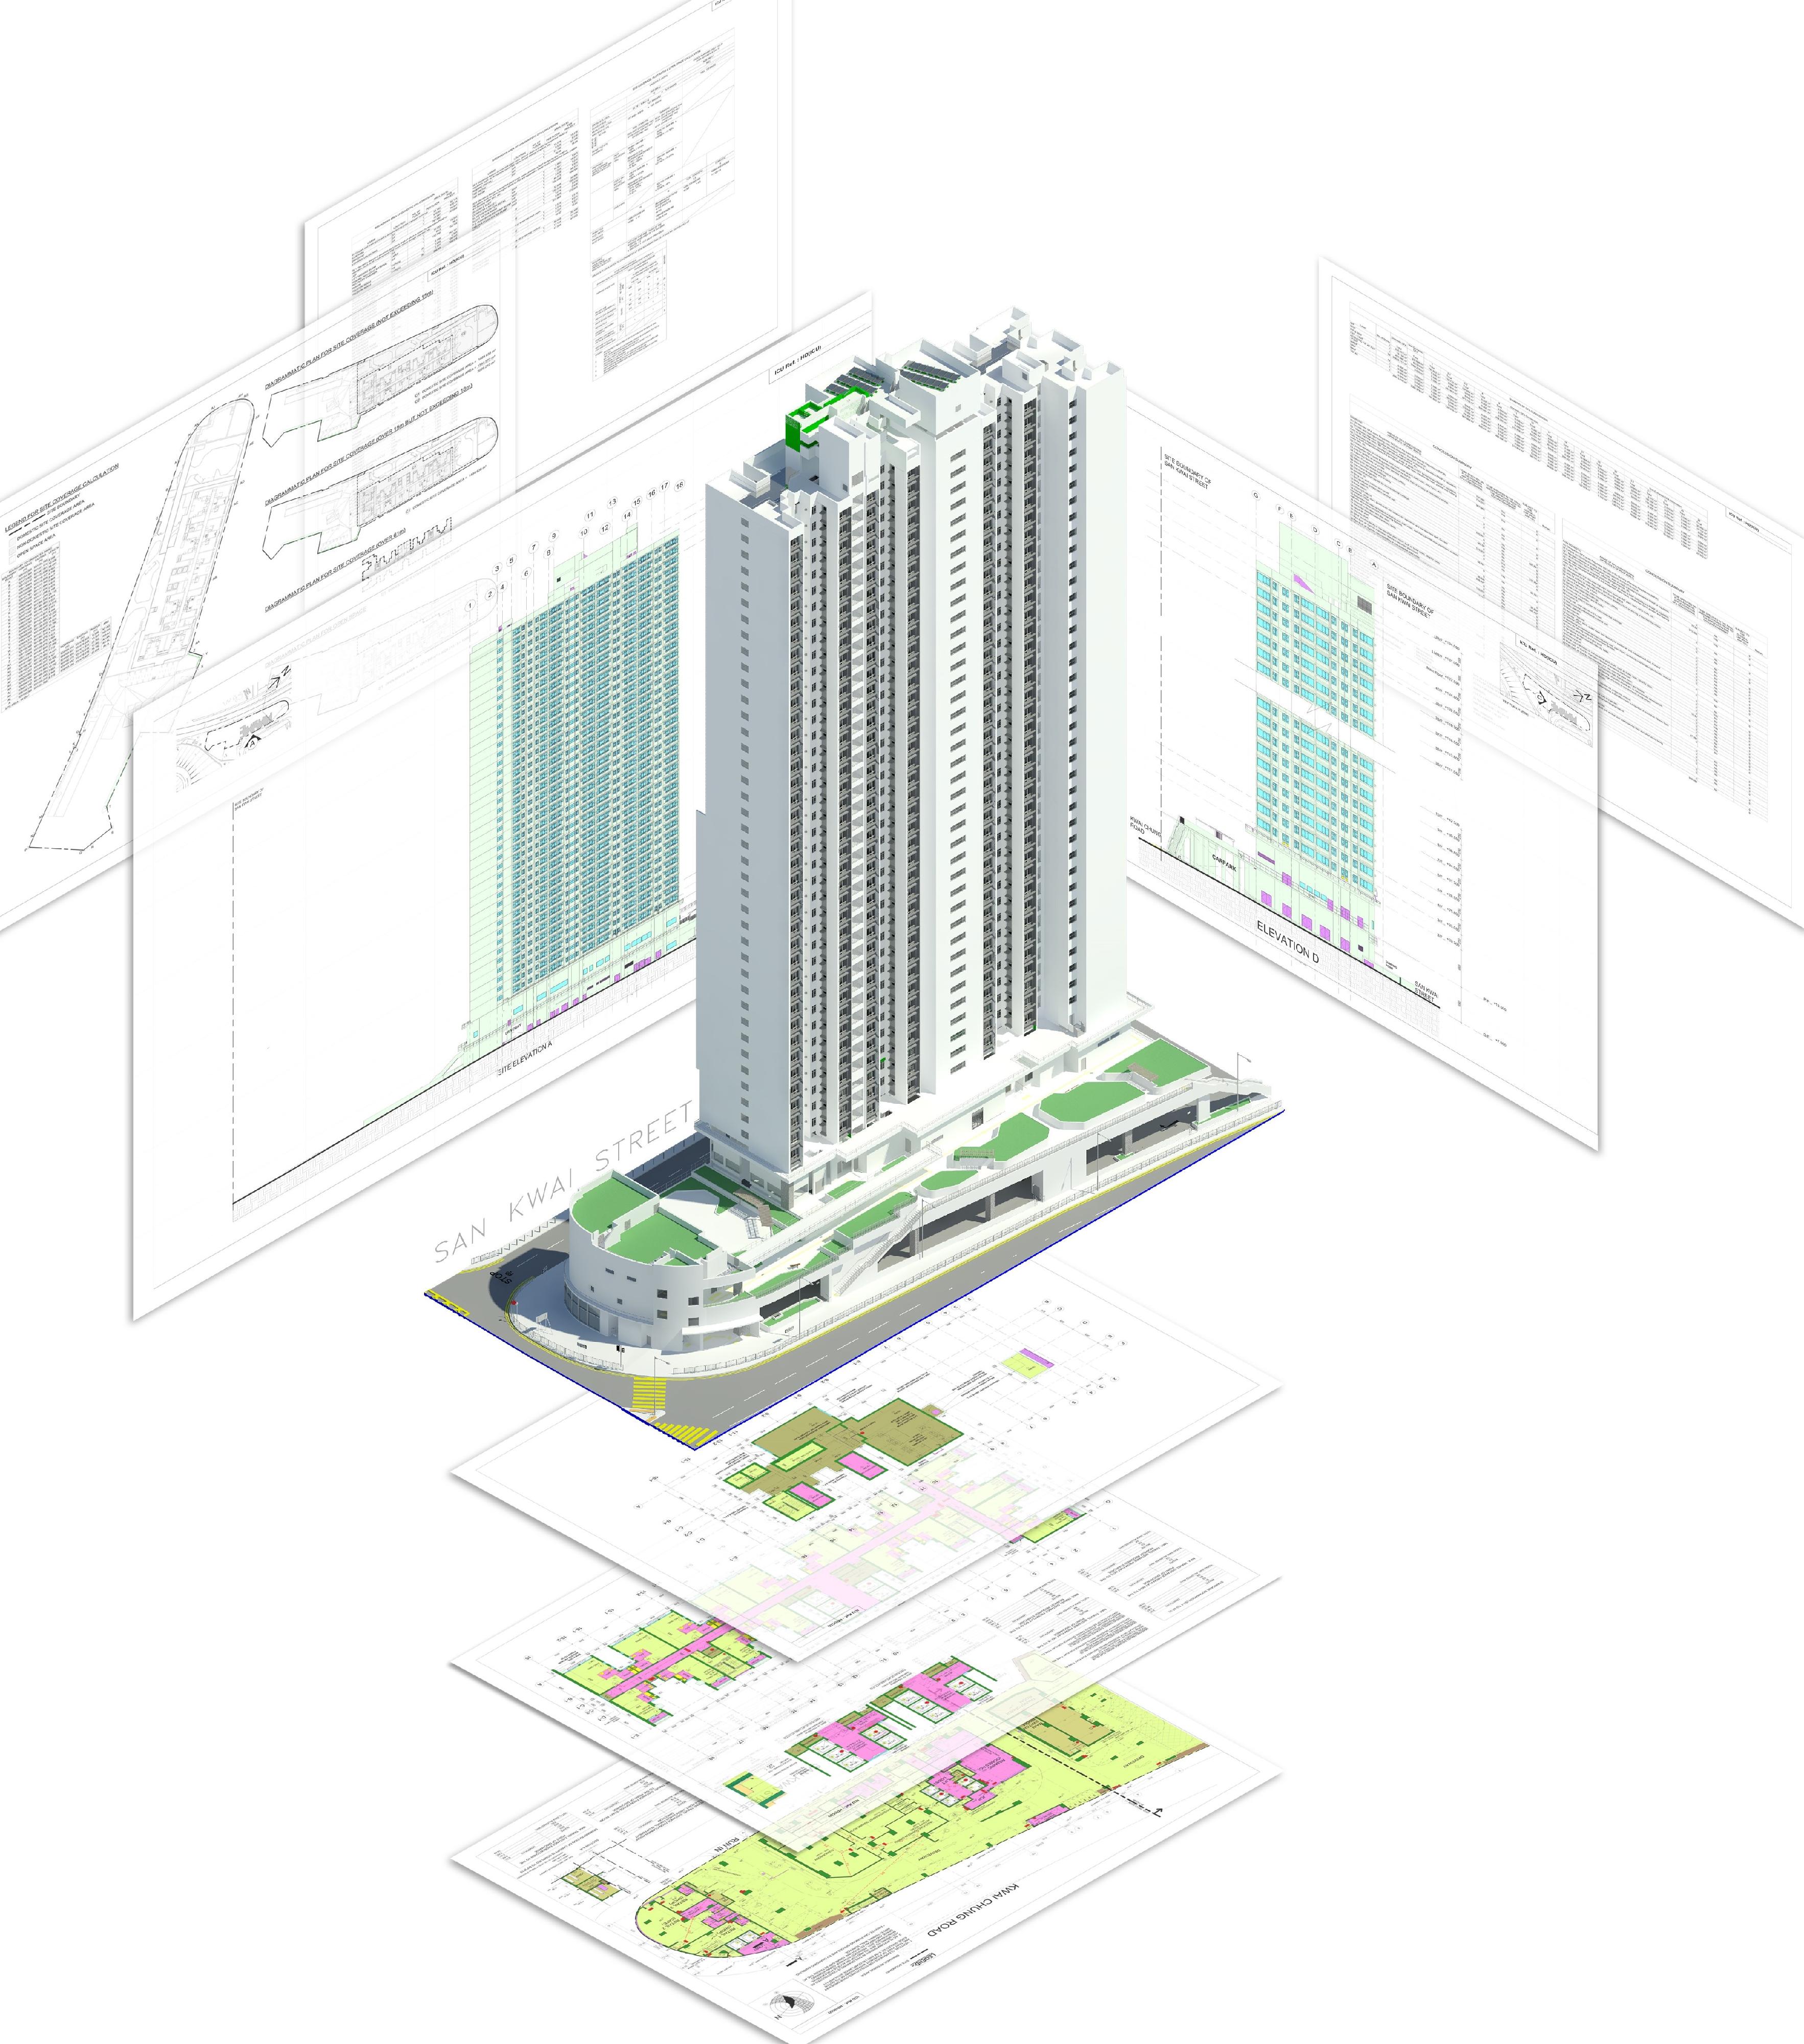 香港房屋委员会项目「建筑信息模拟新里程——成功呈交与审批法定图则」在建造业议会建筑信息模拟成就嘉许礼2022获颁项目奖。该项目以建筑信息模拟制作建筑图则作法定审批，是建造业界应用建筑信息模拟的其中一项最重要的领域。图示以建筑信息模拟制作的新葵街公营房屋发展项目建筑图则。